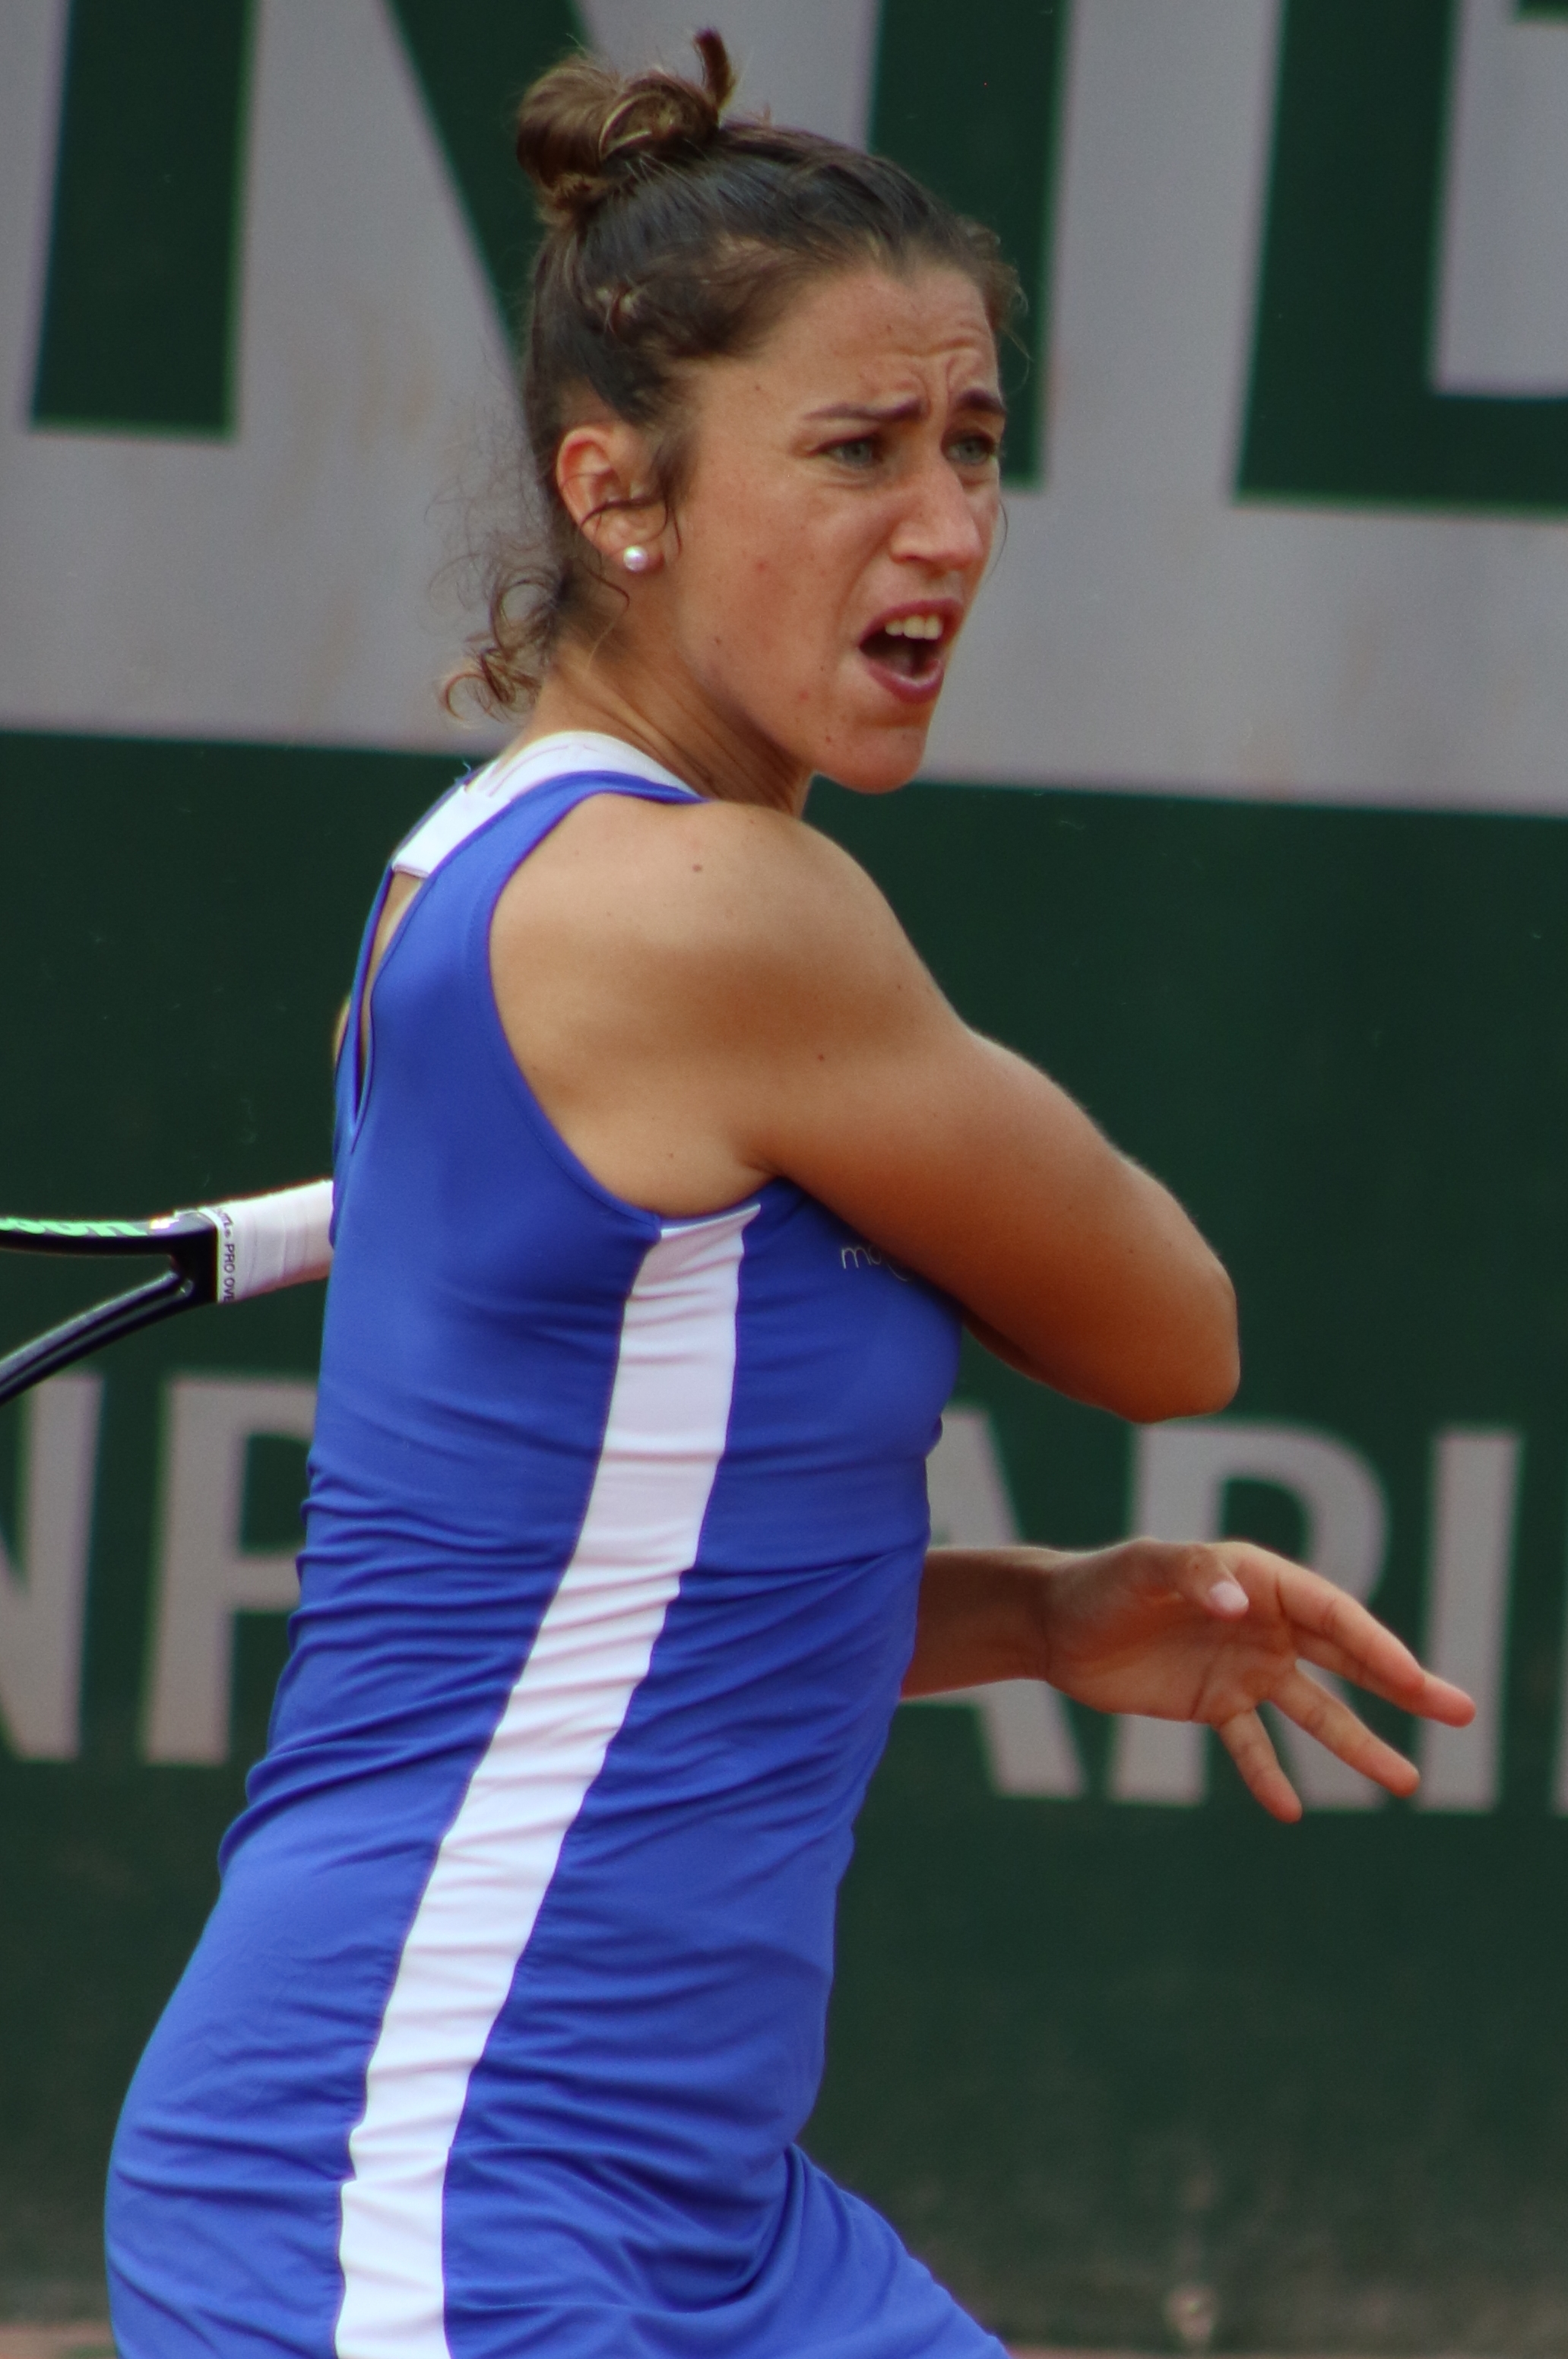 Dubai, UAE, 19th. Feb, 2023. Spanish tennis player Paula Badosa in